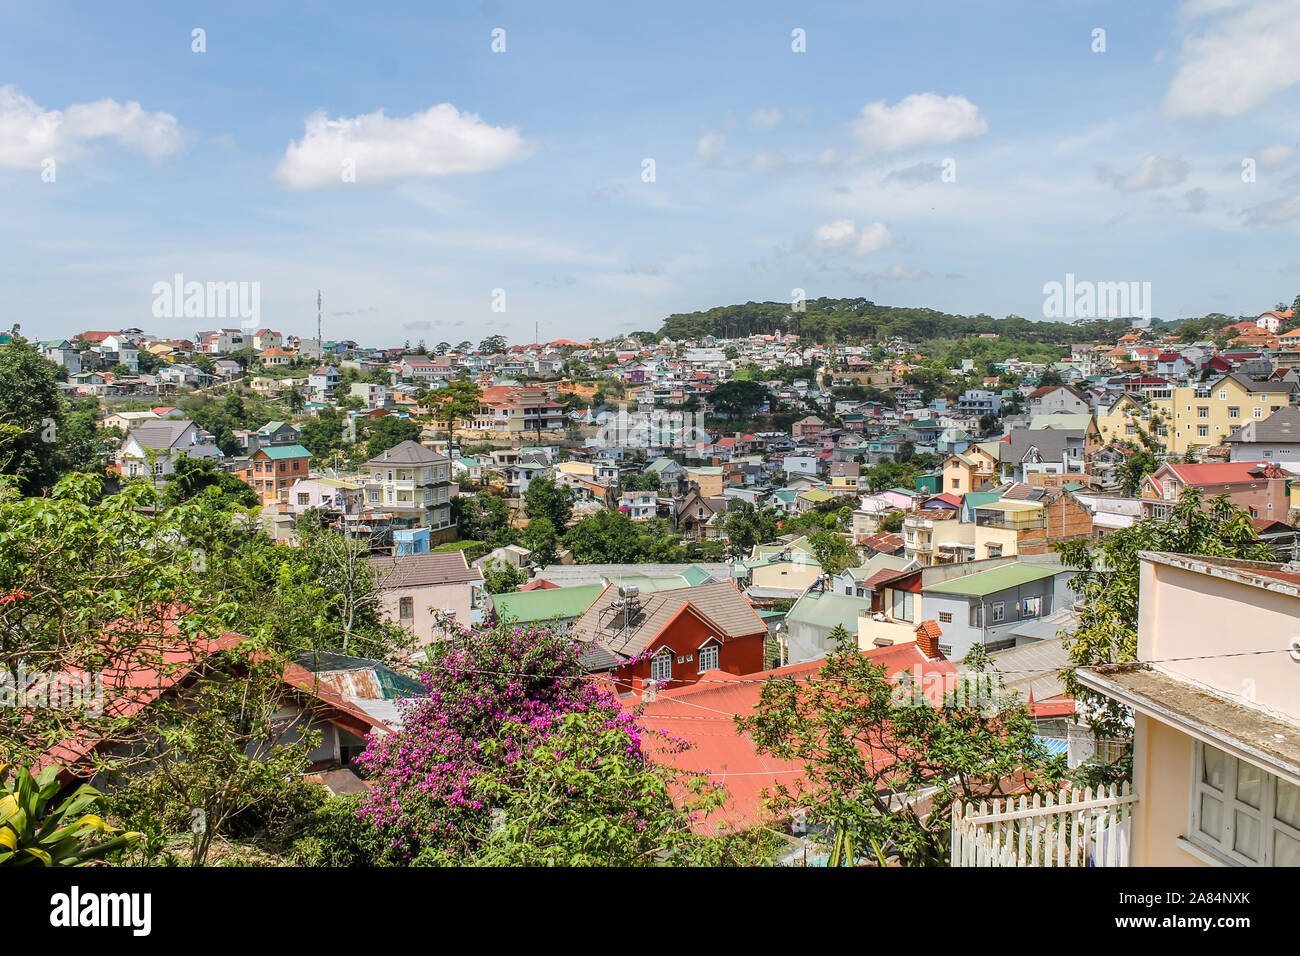 Anzeigen von Dalat (Da Lat) von einem Standpunkt aus, der Stadt in den Bergen in der Provinz Lam Dong in Zentralvietnam. Stockfoto